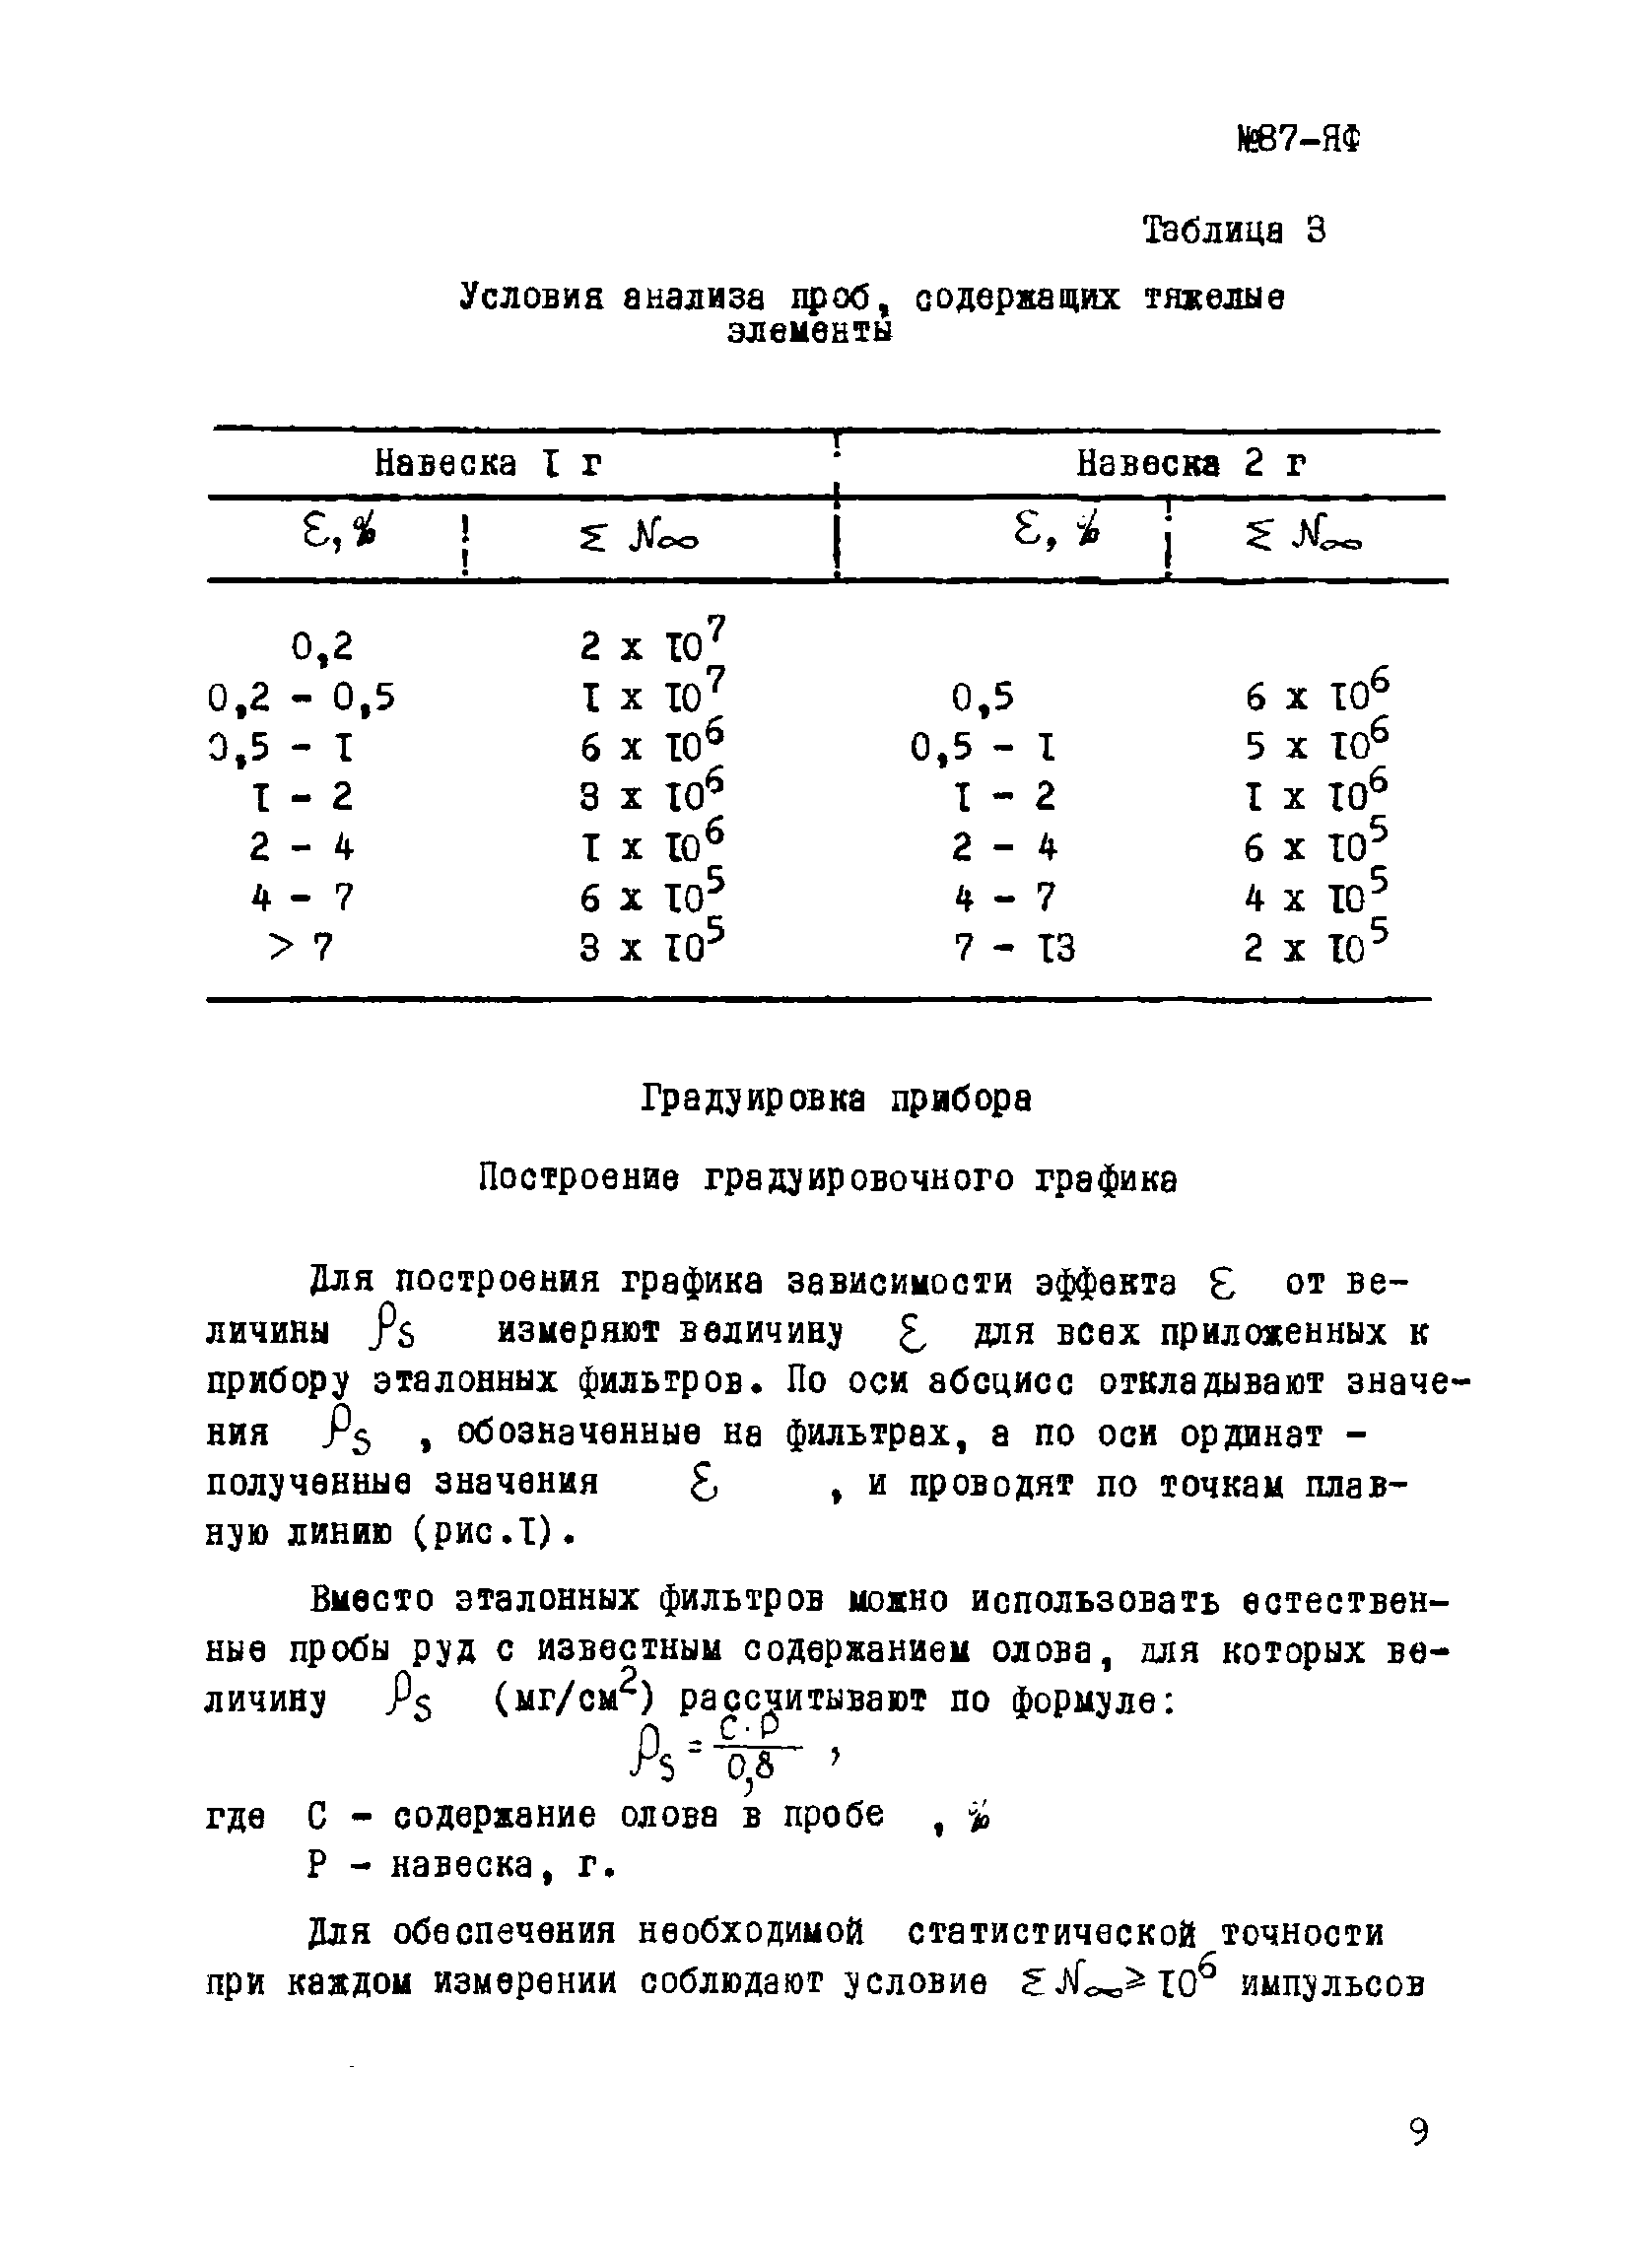 Инструкция НСАМ 87-ЯФ